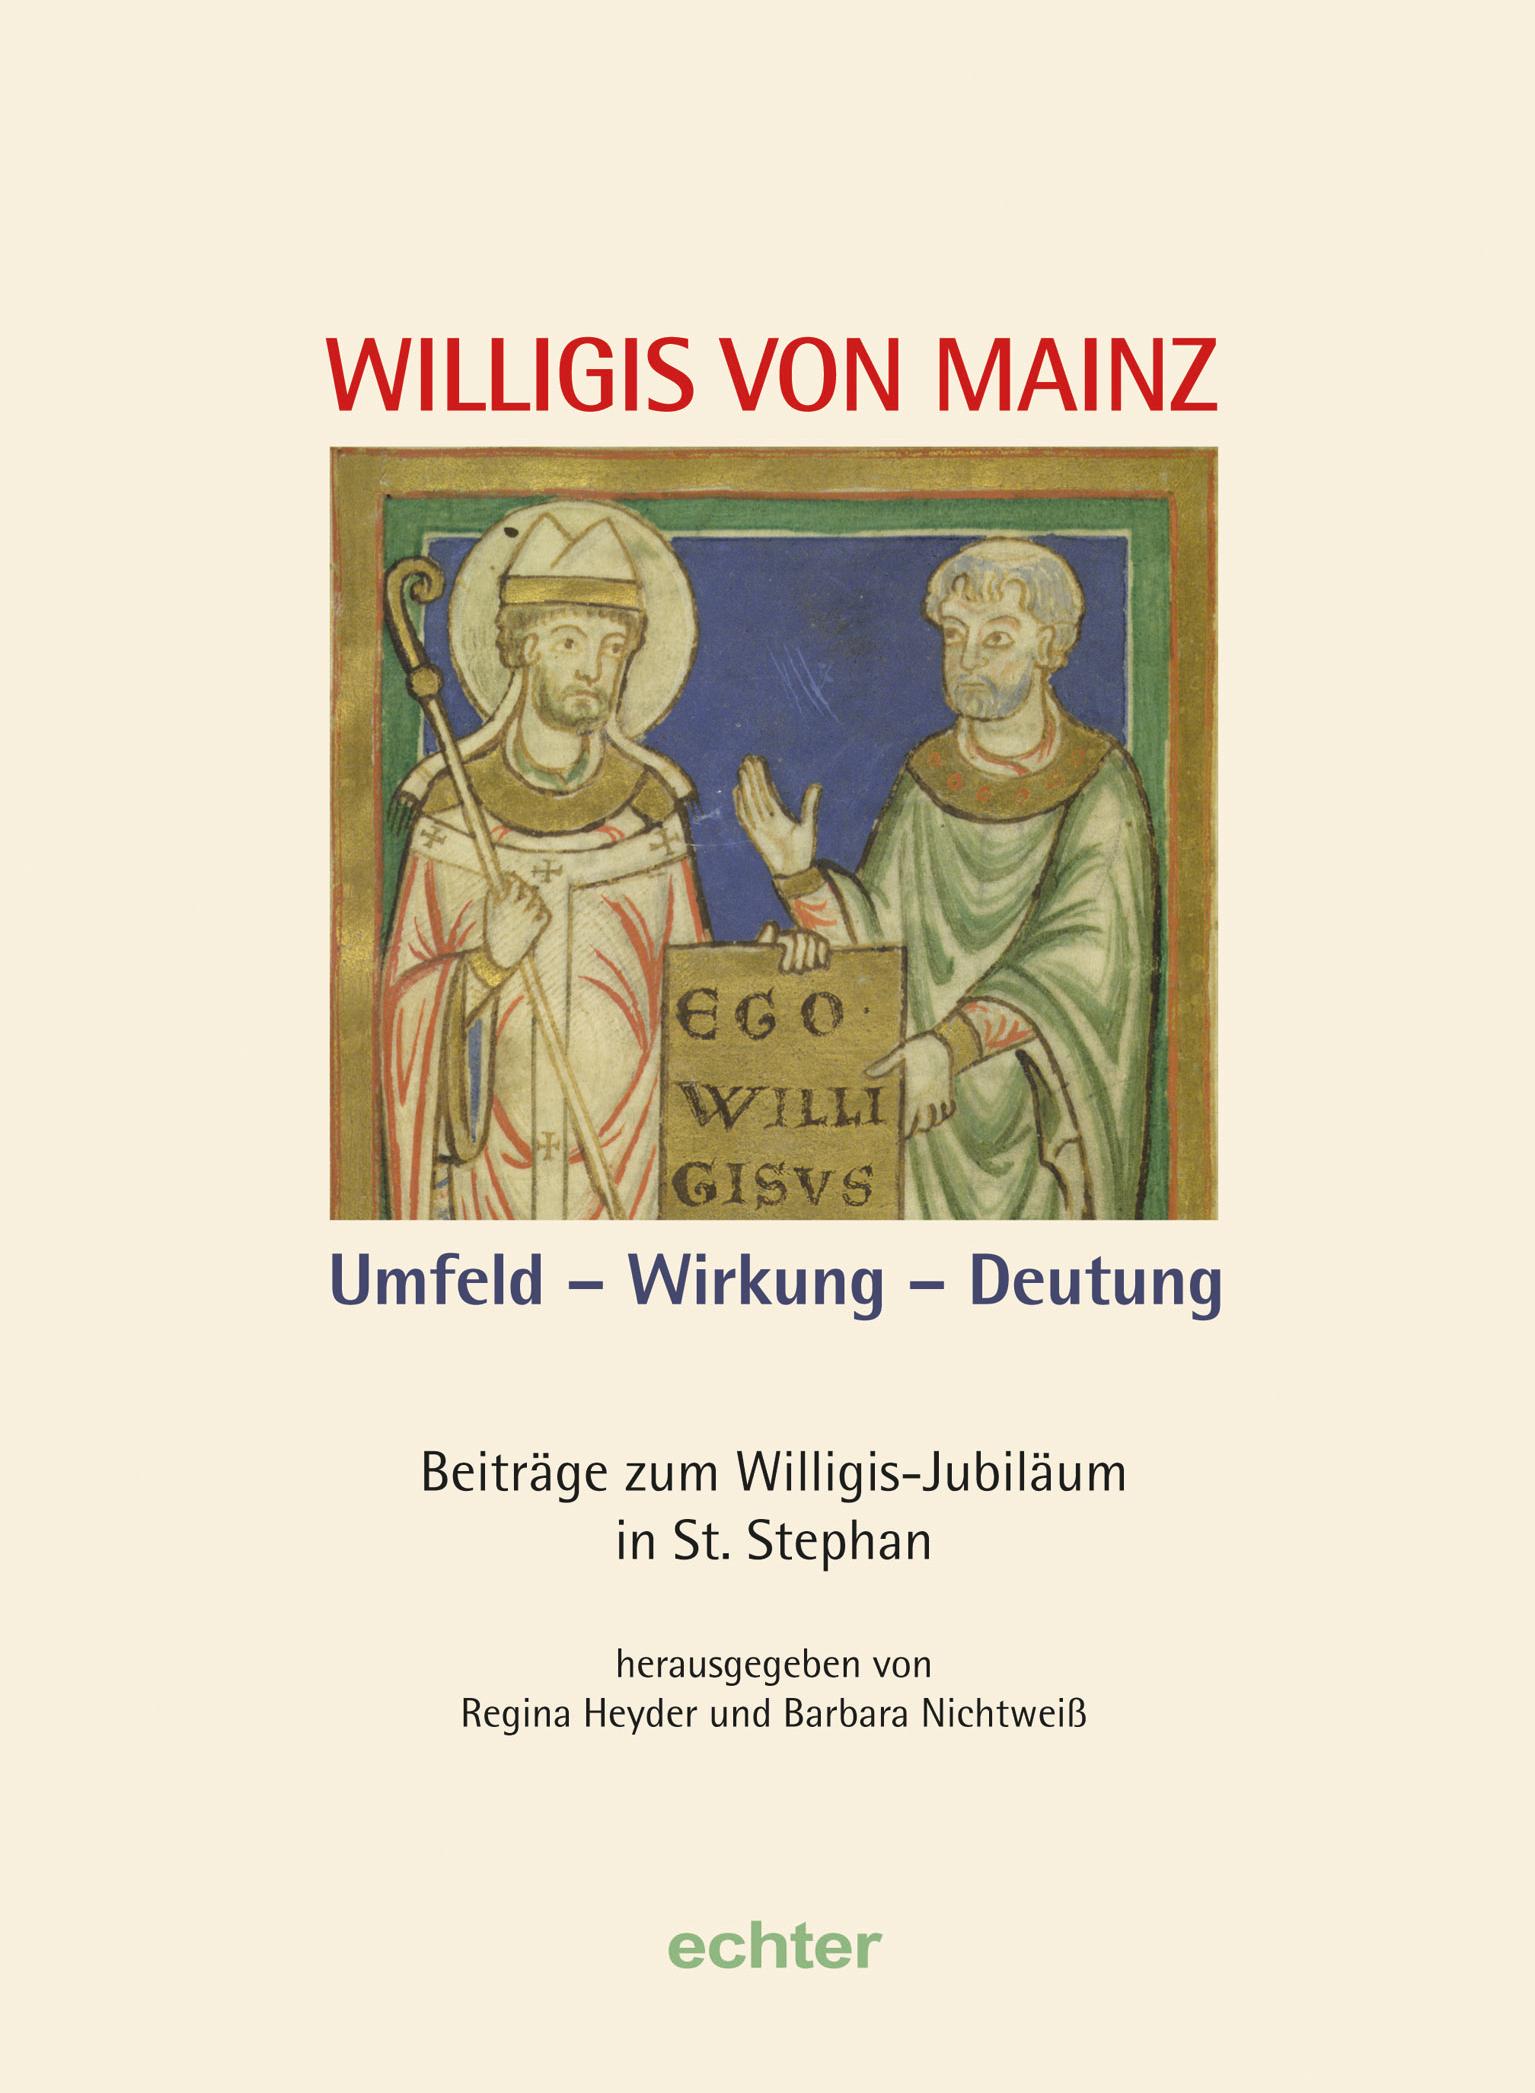 Willigis von Mainz